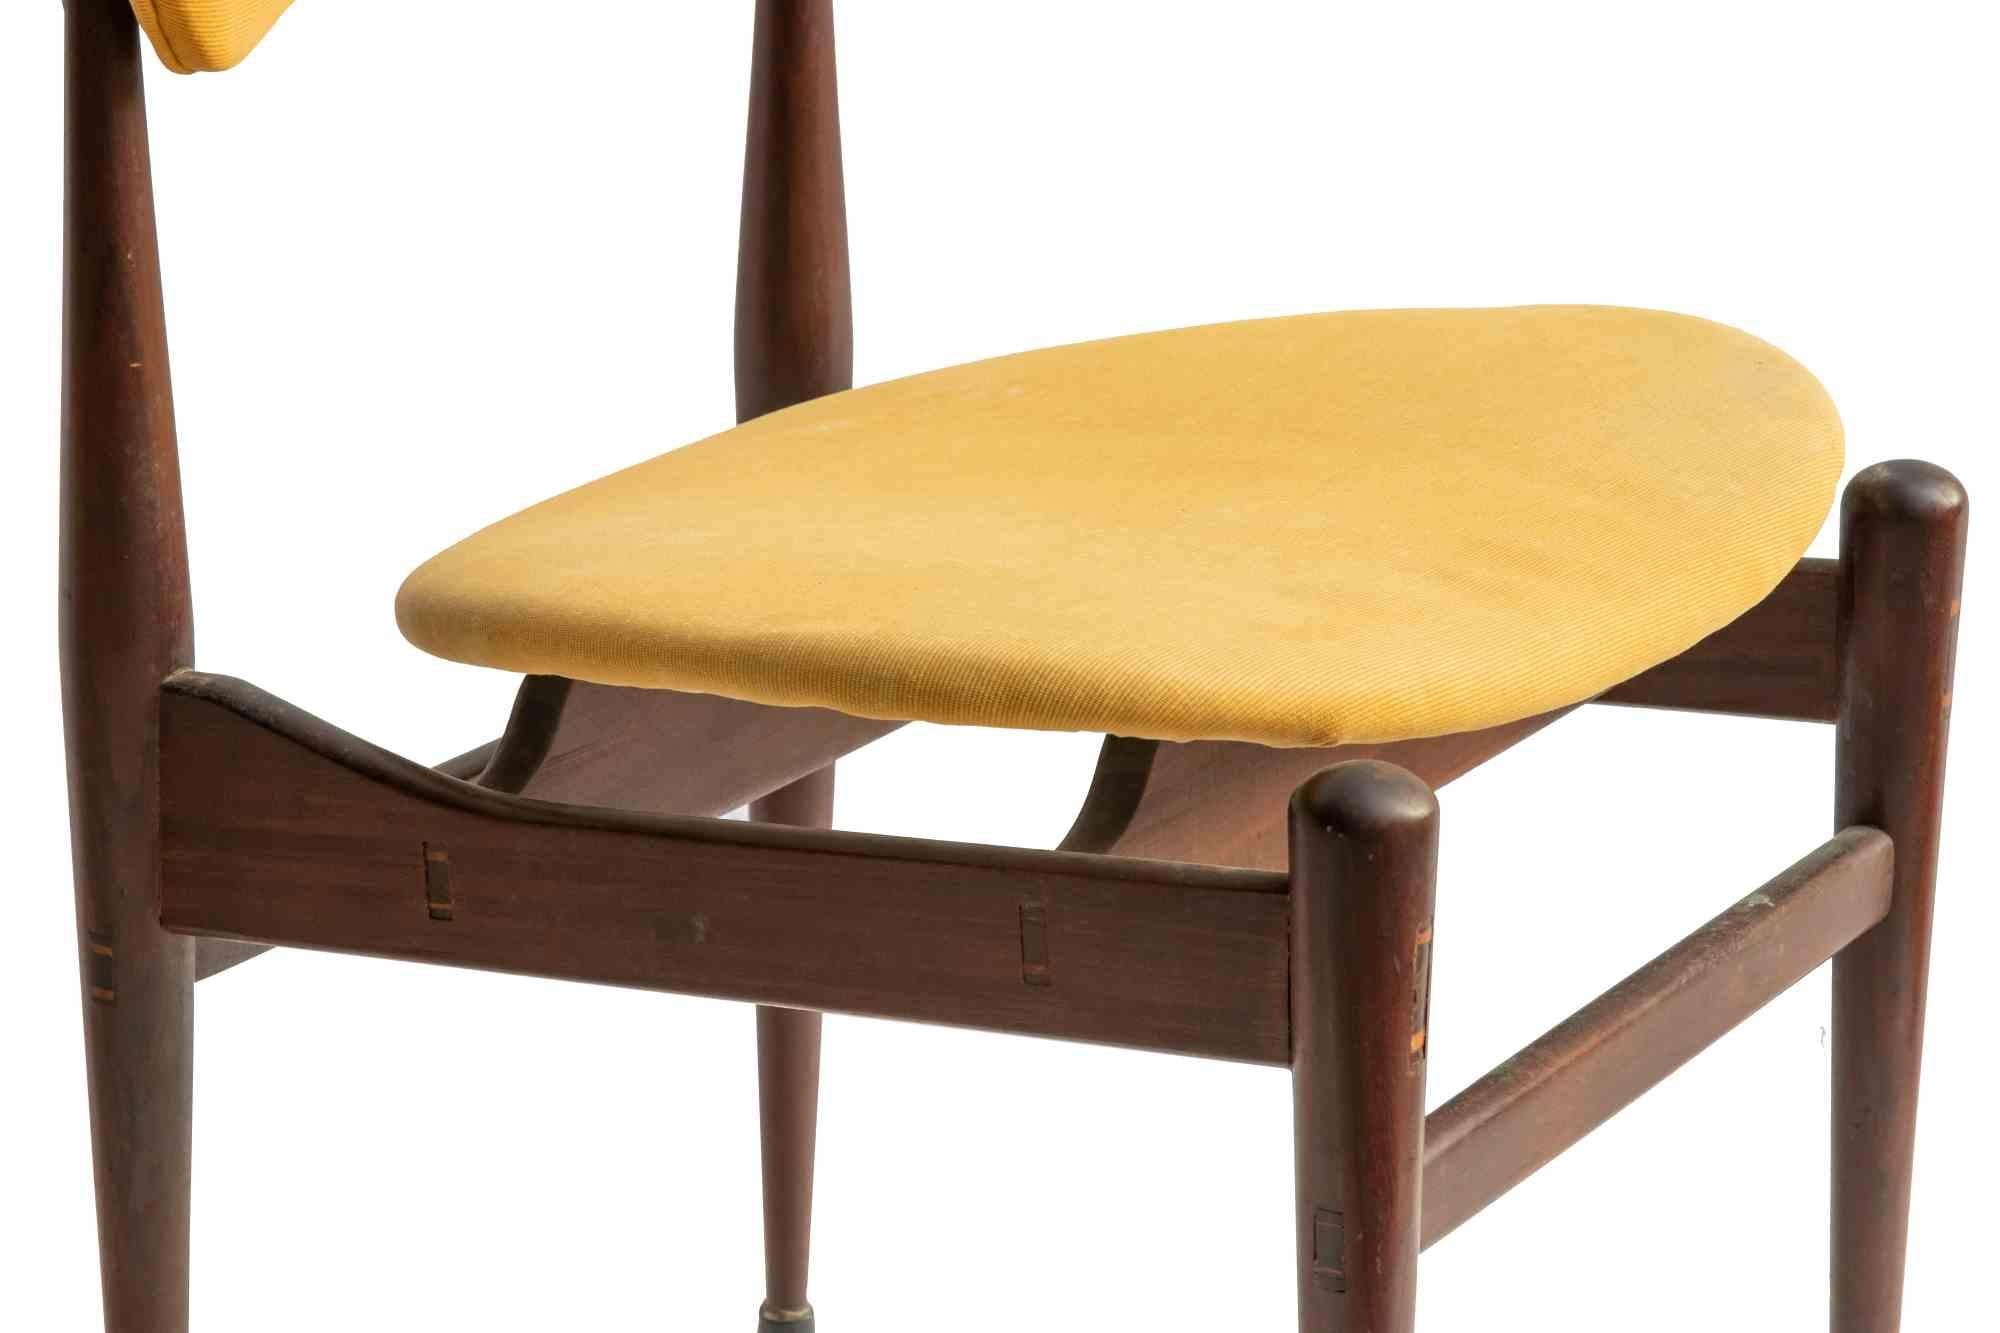 Die Schmetterlingsstühle sind ein originelles Designobjekt, das von Inge und Luciano Rubino in den 1960er Jahren entworfen wurde.

Schmetterlingsstühle (oder Modell 329) wurden von der Soro Stolefabrik hergestellt.

Gelber Stoff und